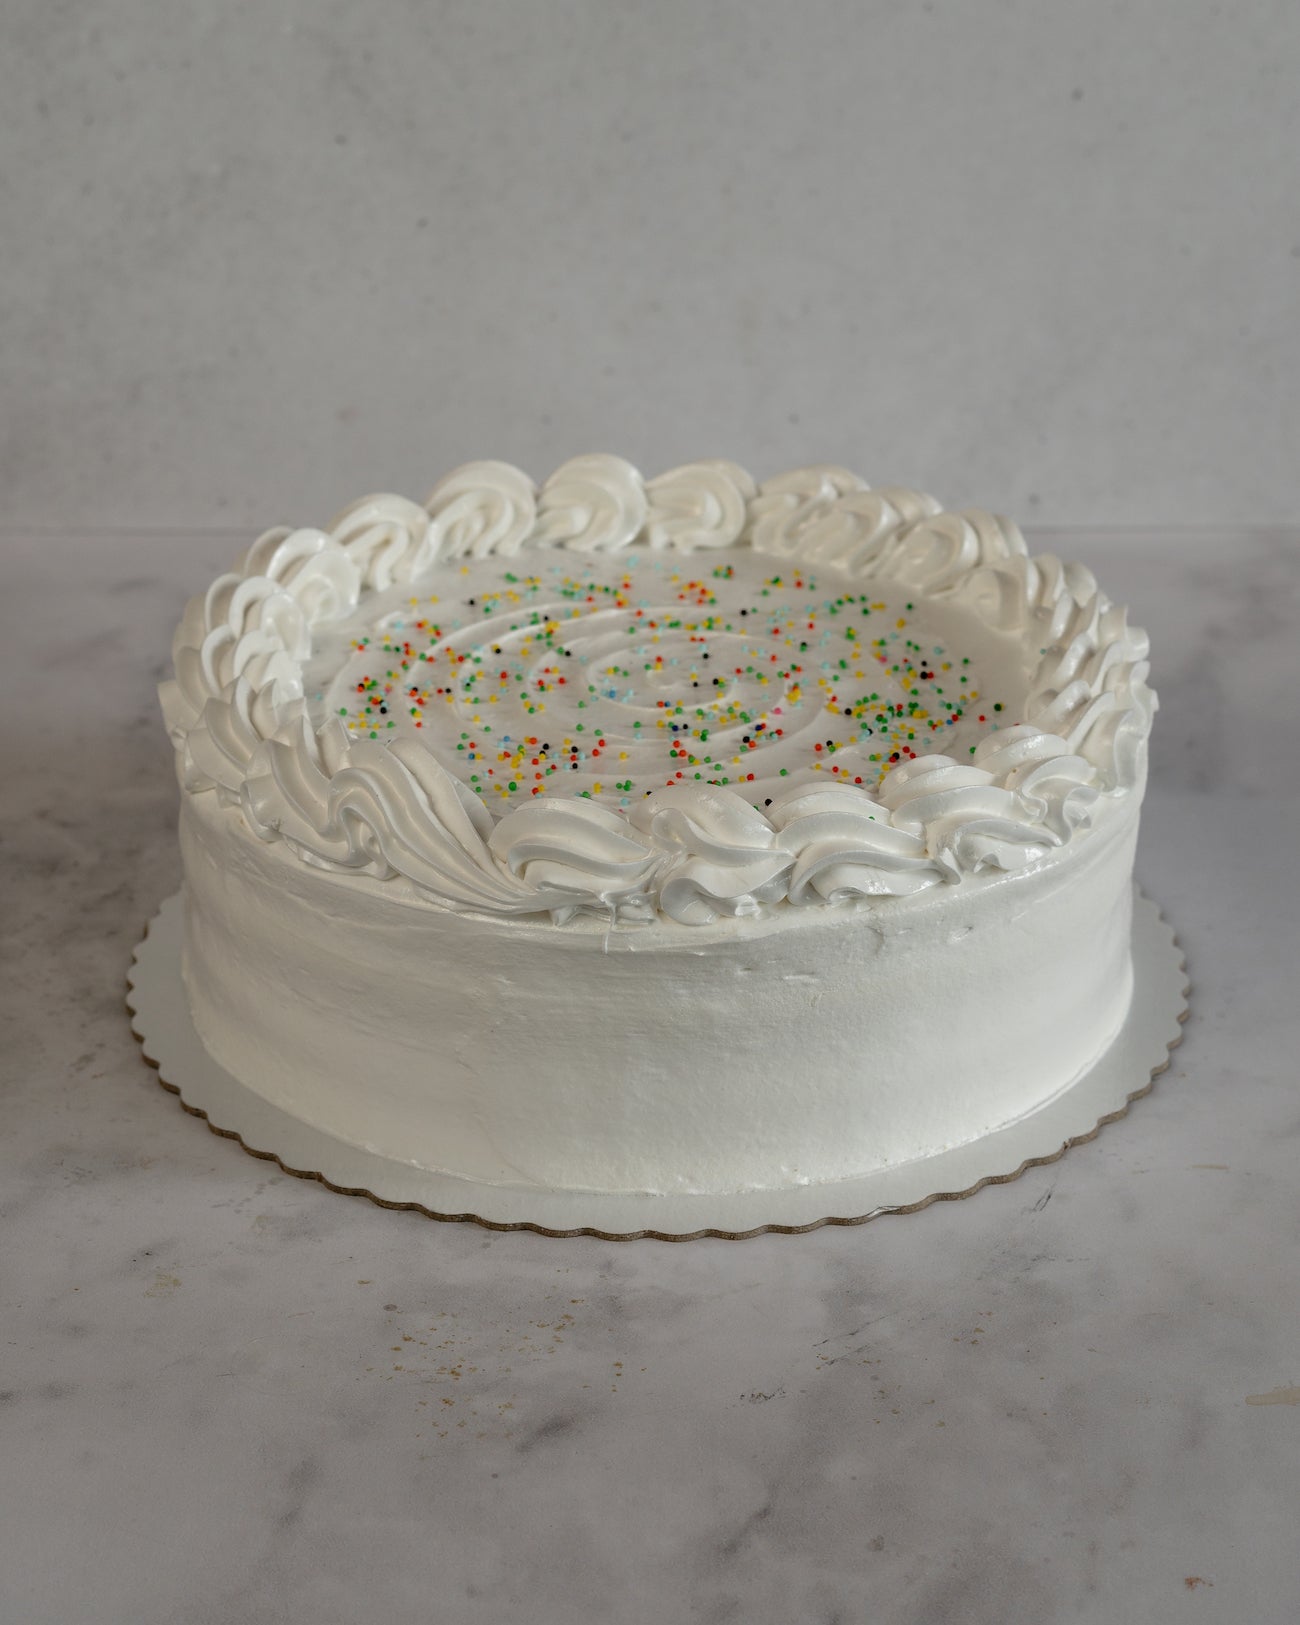 Birthday Cake Merengue